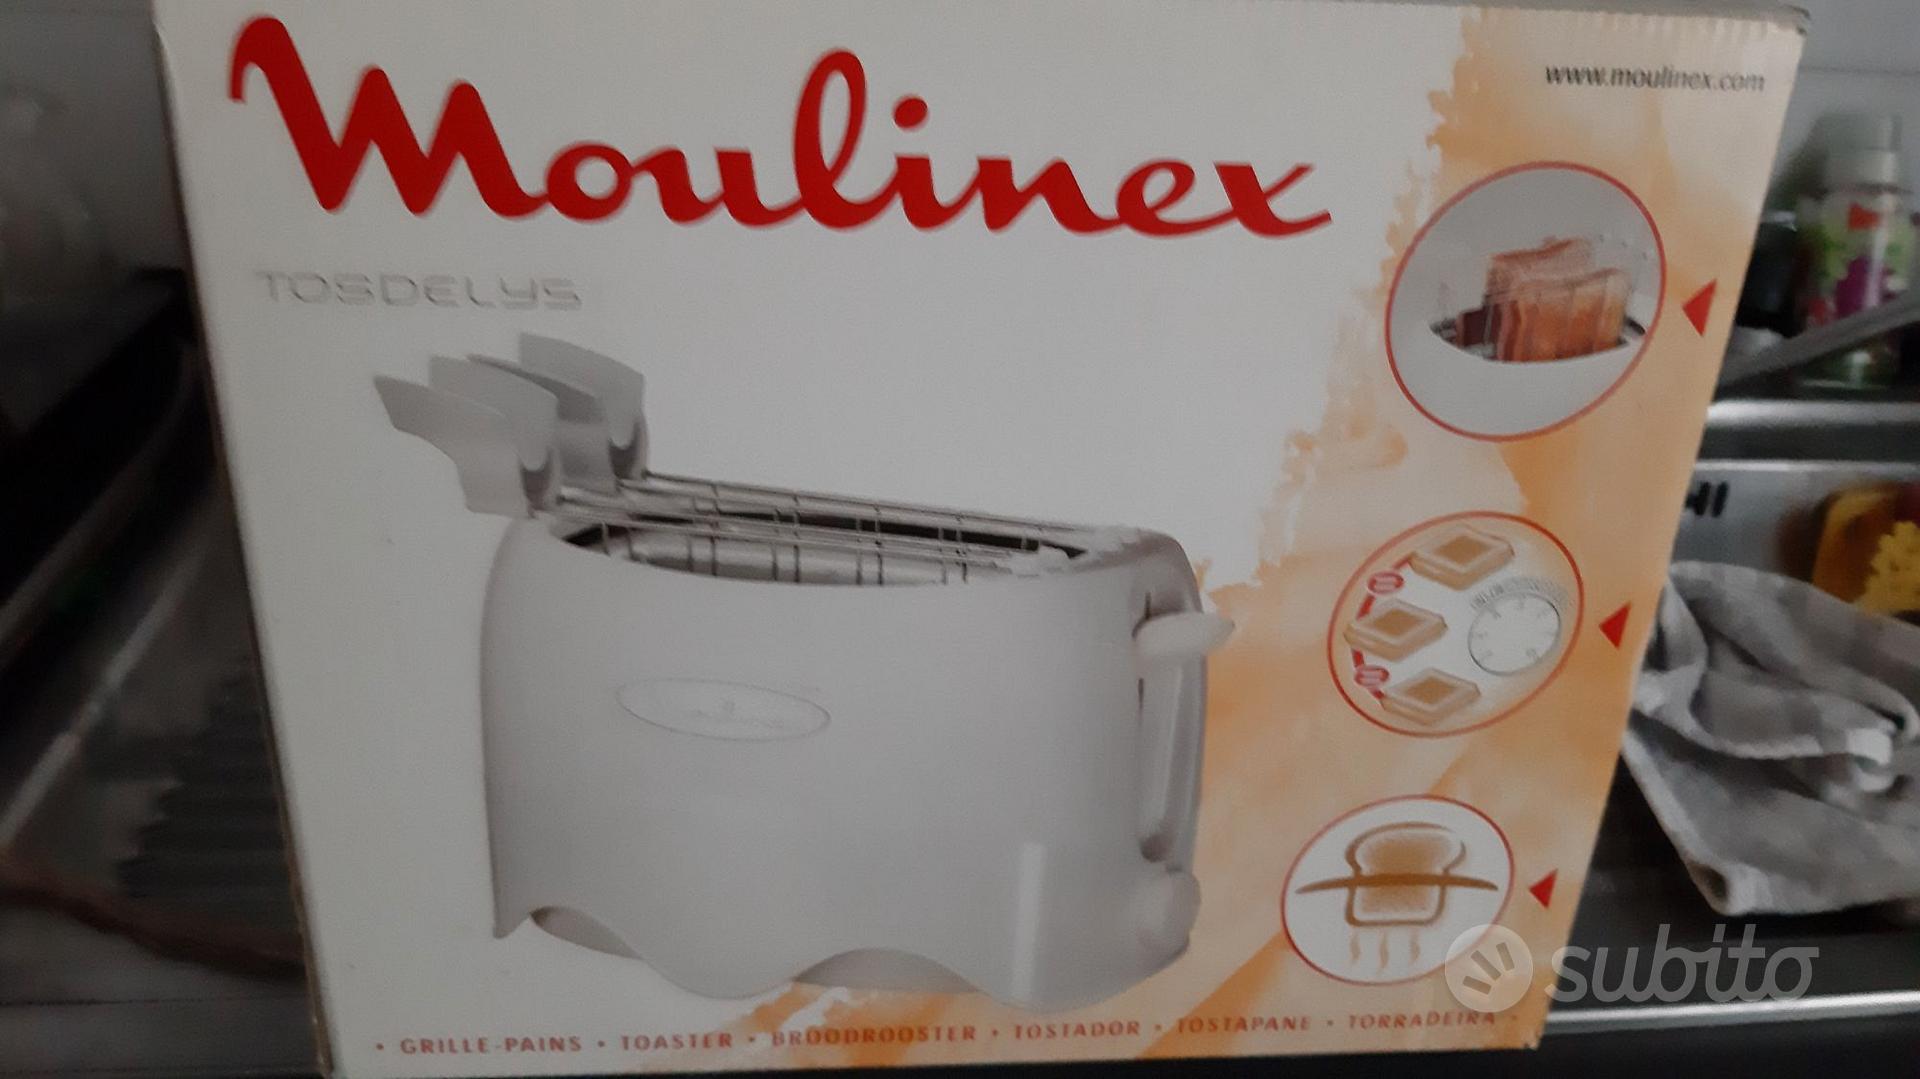 Tostapane moulinex - Elettrodomestici In vendita a Trento